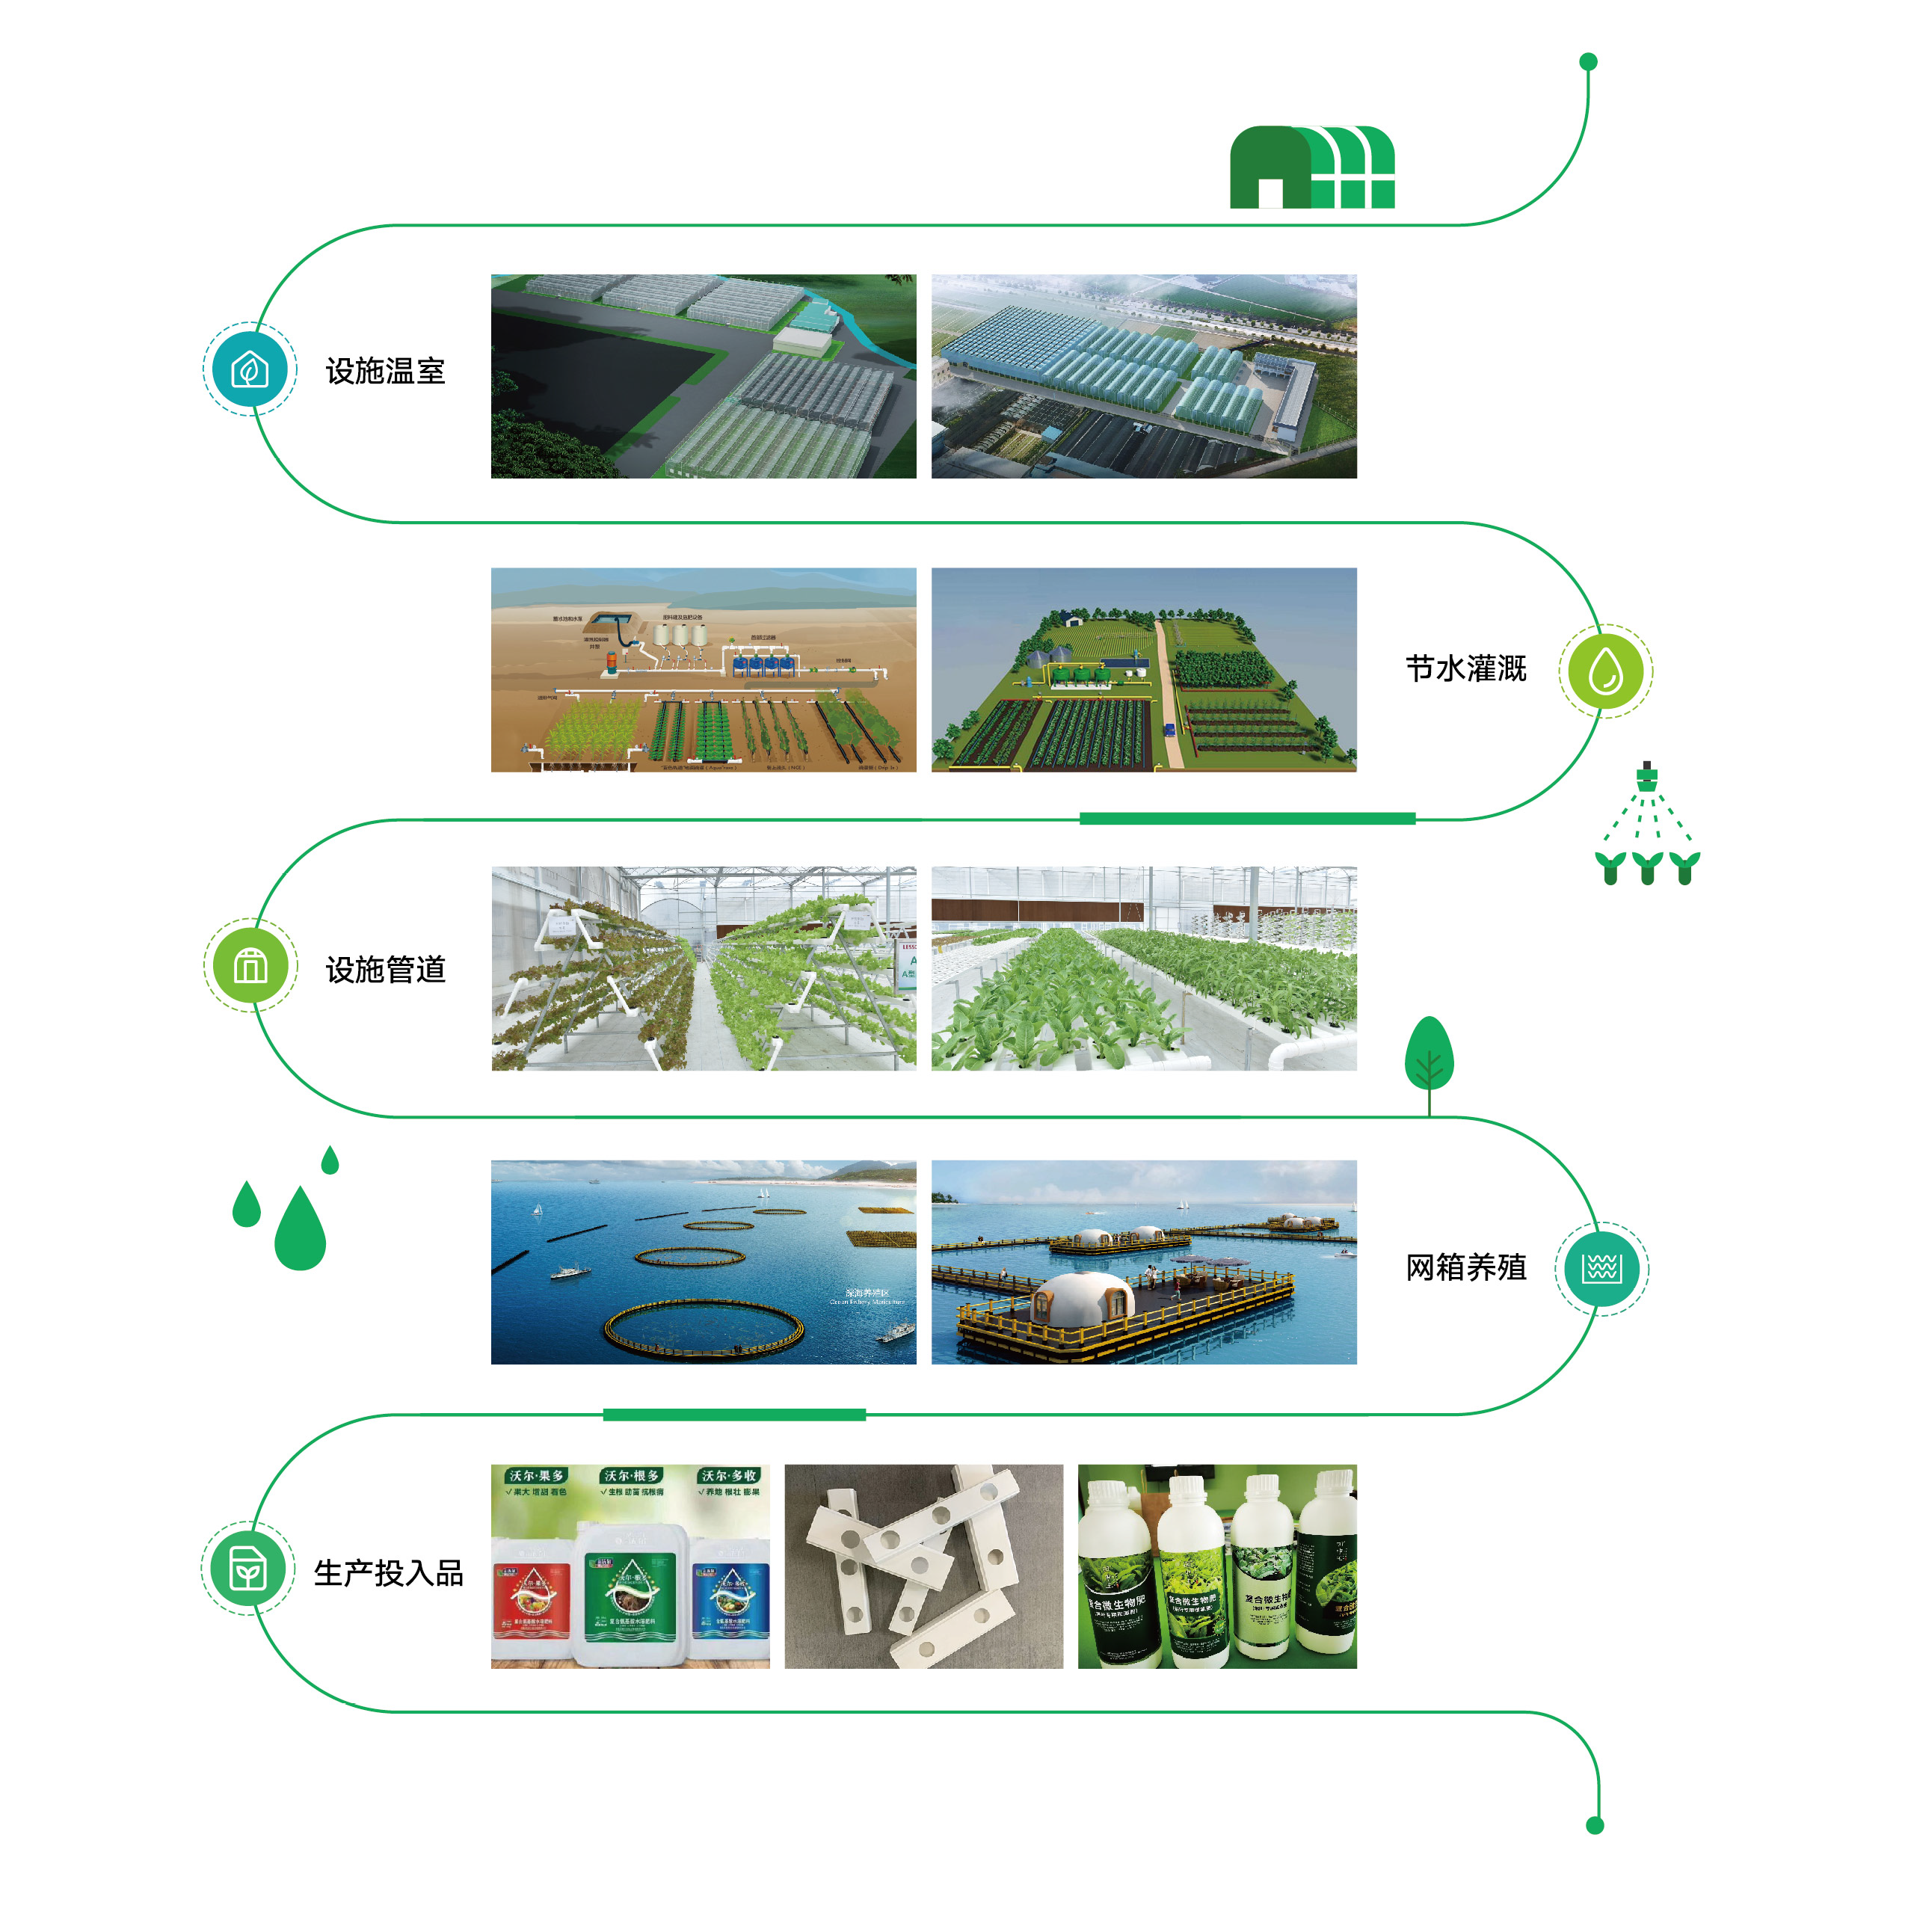 联塑农业业务:设施温室、节⽔灌溉、设
施管道、⽹箱养殖、⽣产投⼊品